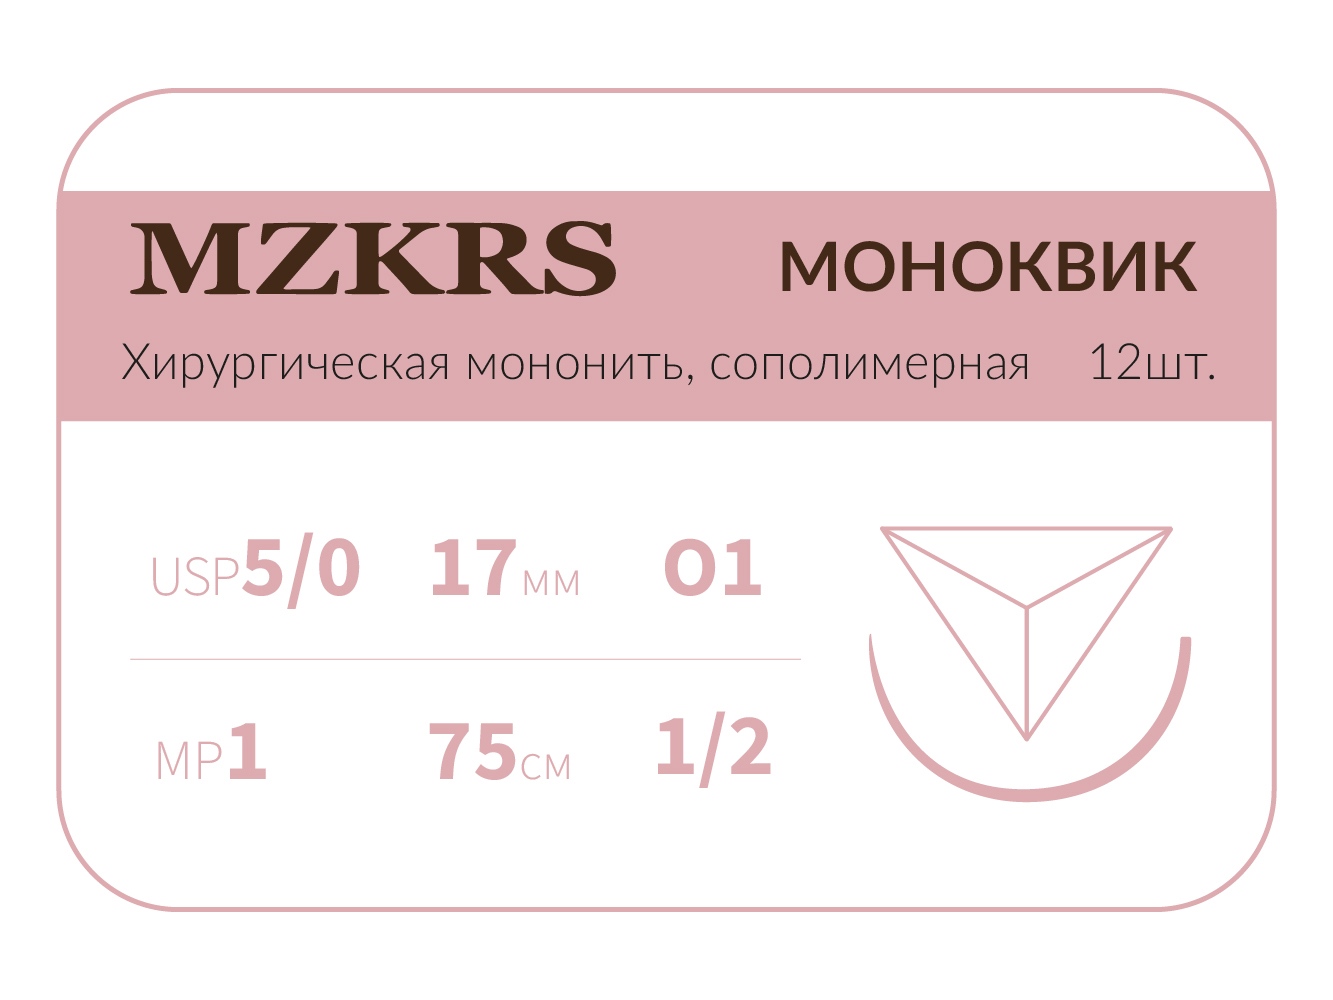 1712О1 Premium-5/0 (1)75 МОНК МОНОКВИК хирургическая мононить ,сополимерная, обратно-режущая игла, MZKRS (Россия)